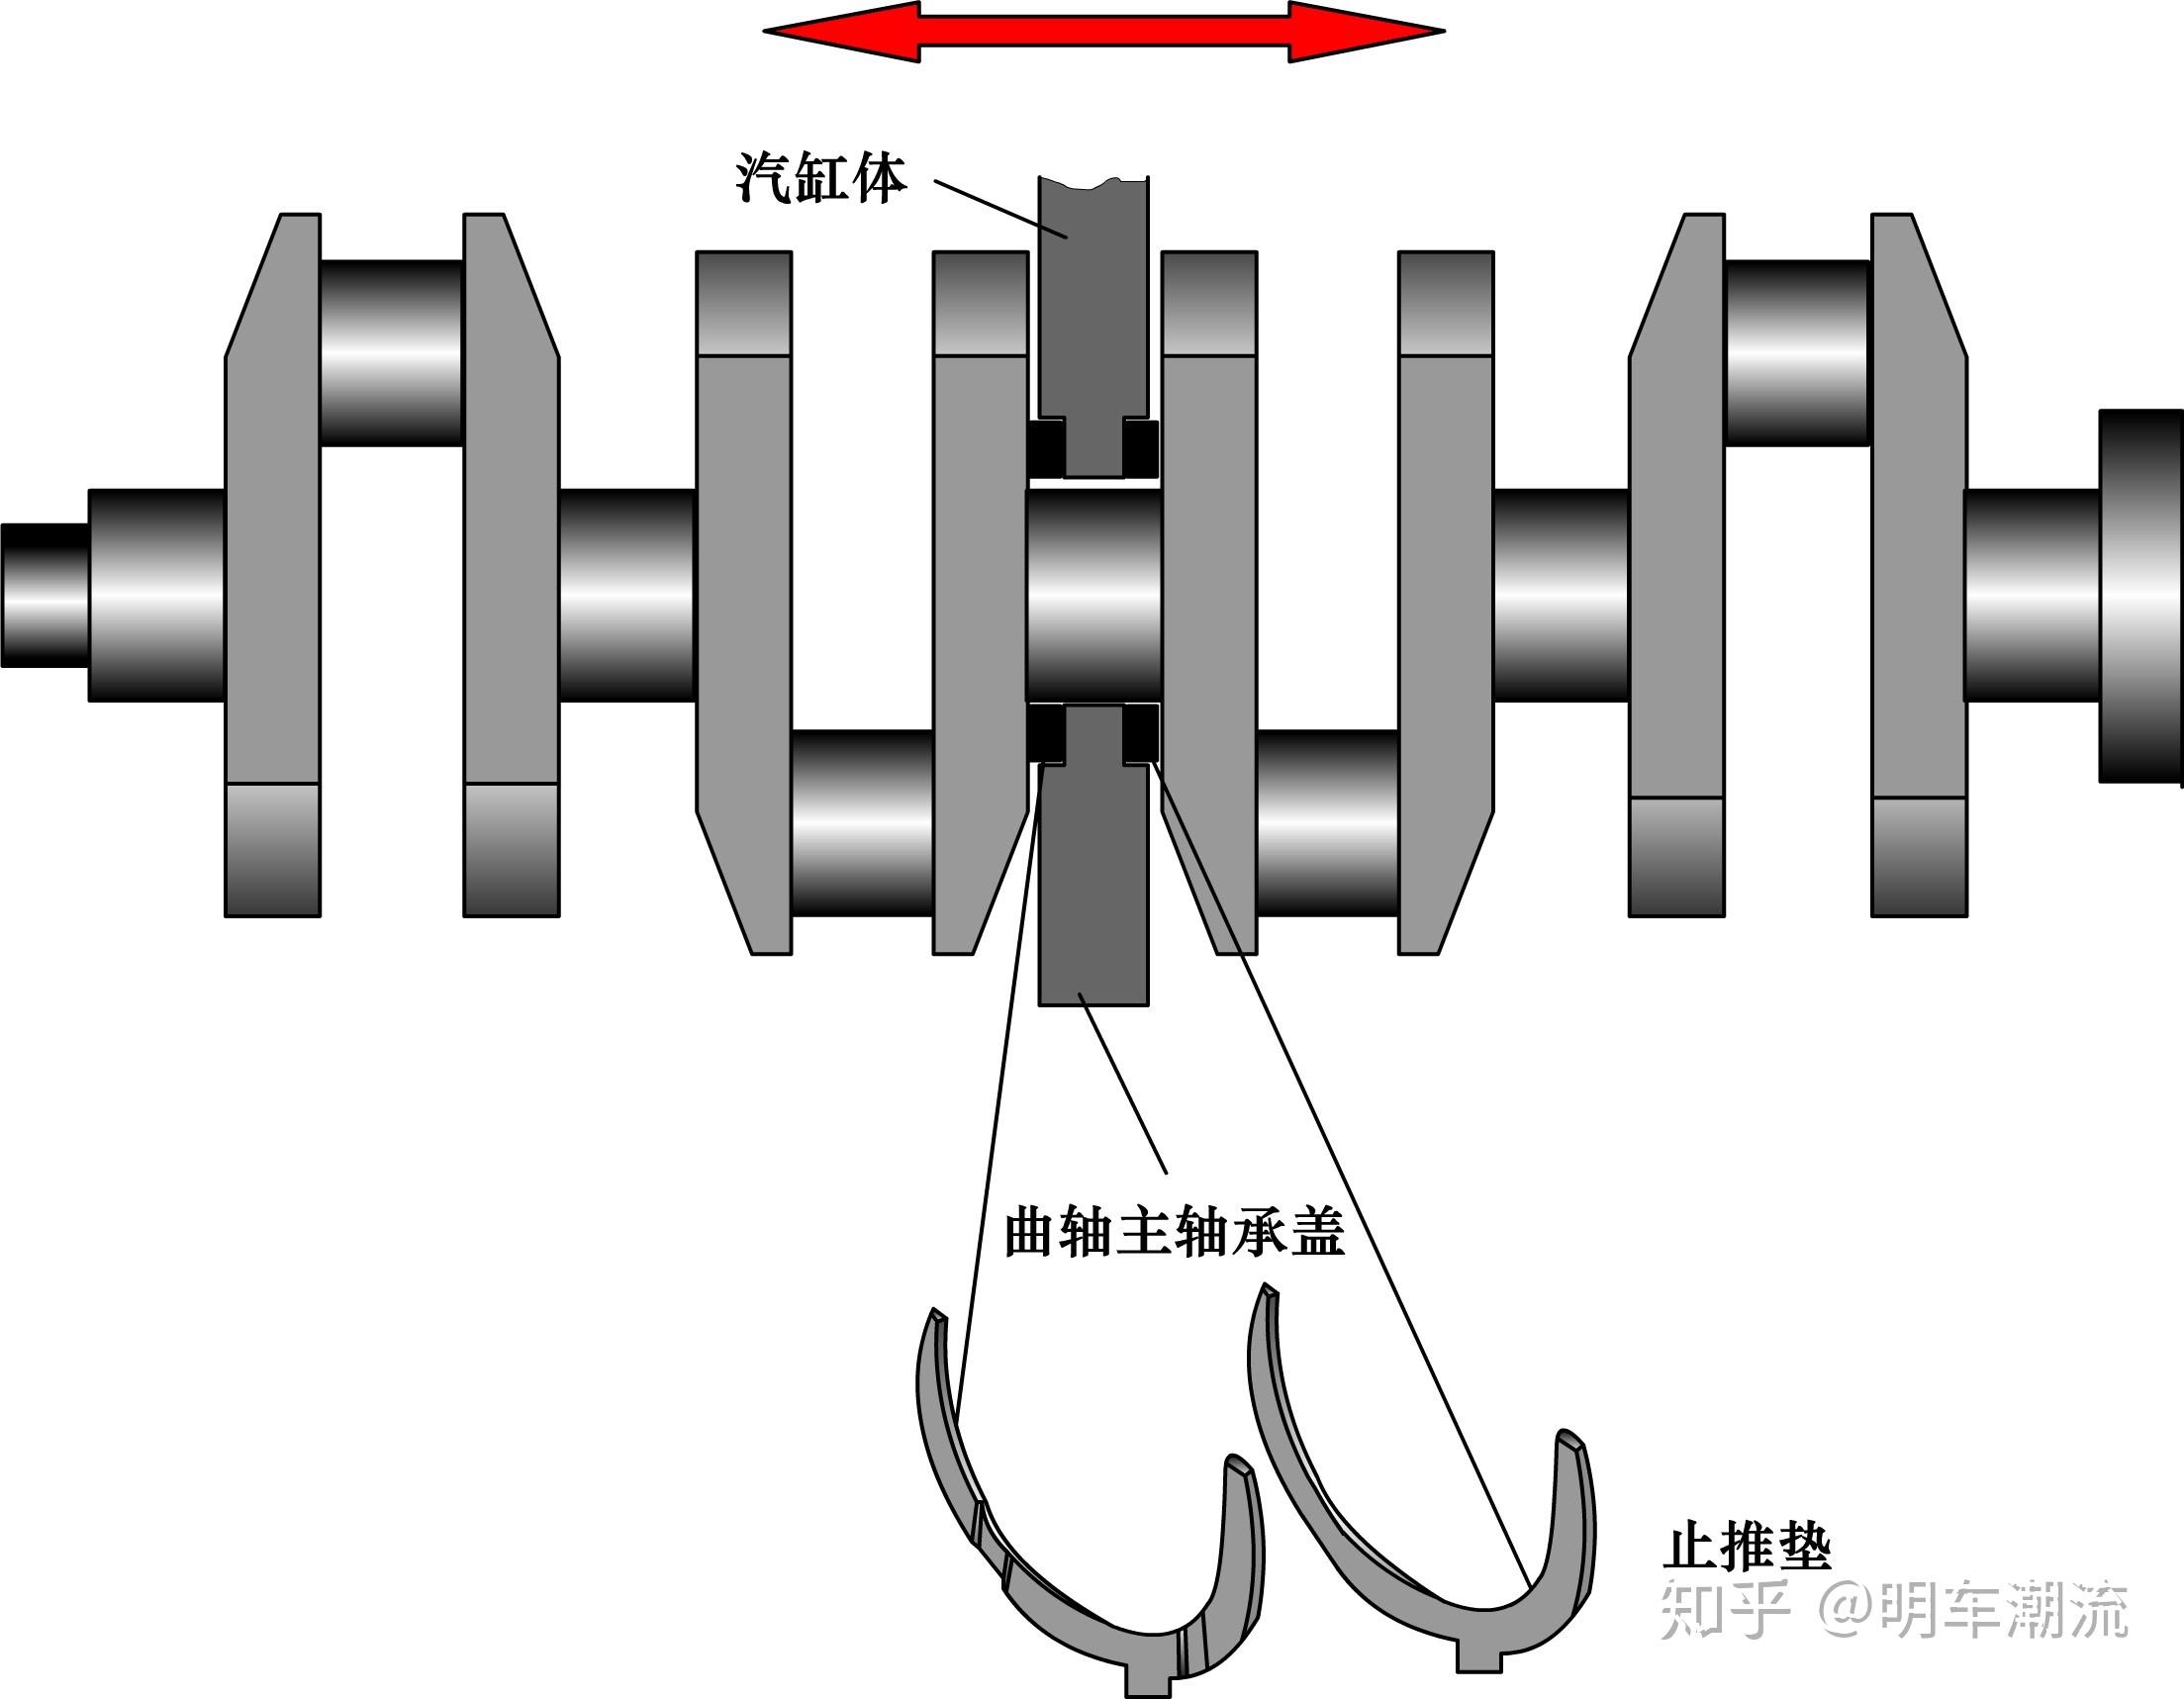 发动机曲轴飞轮组组成部件